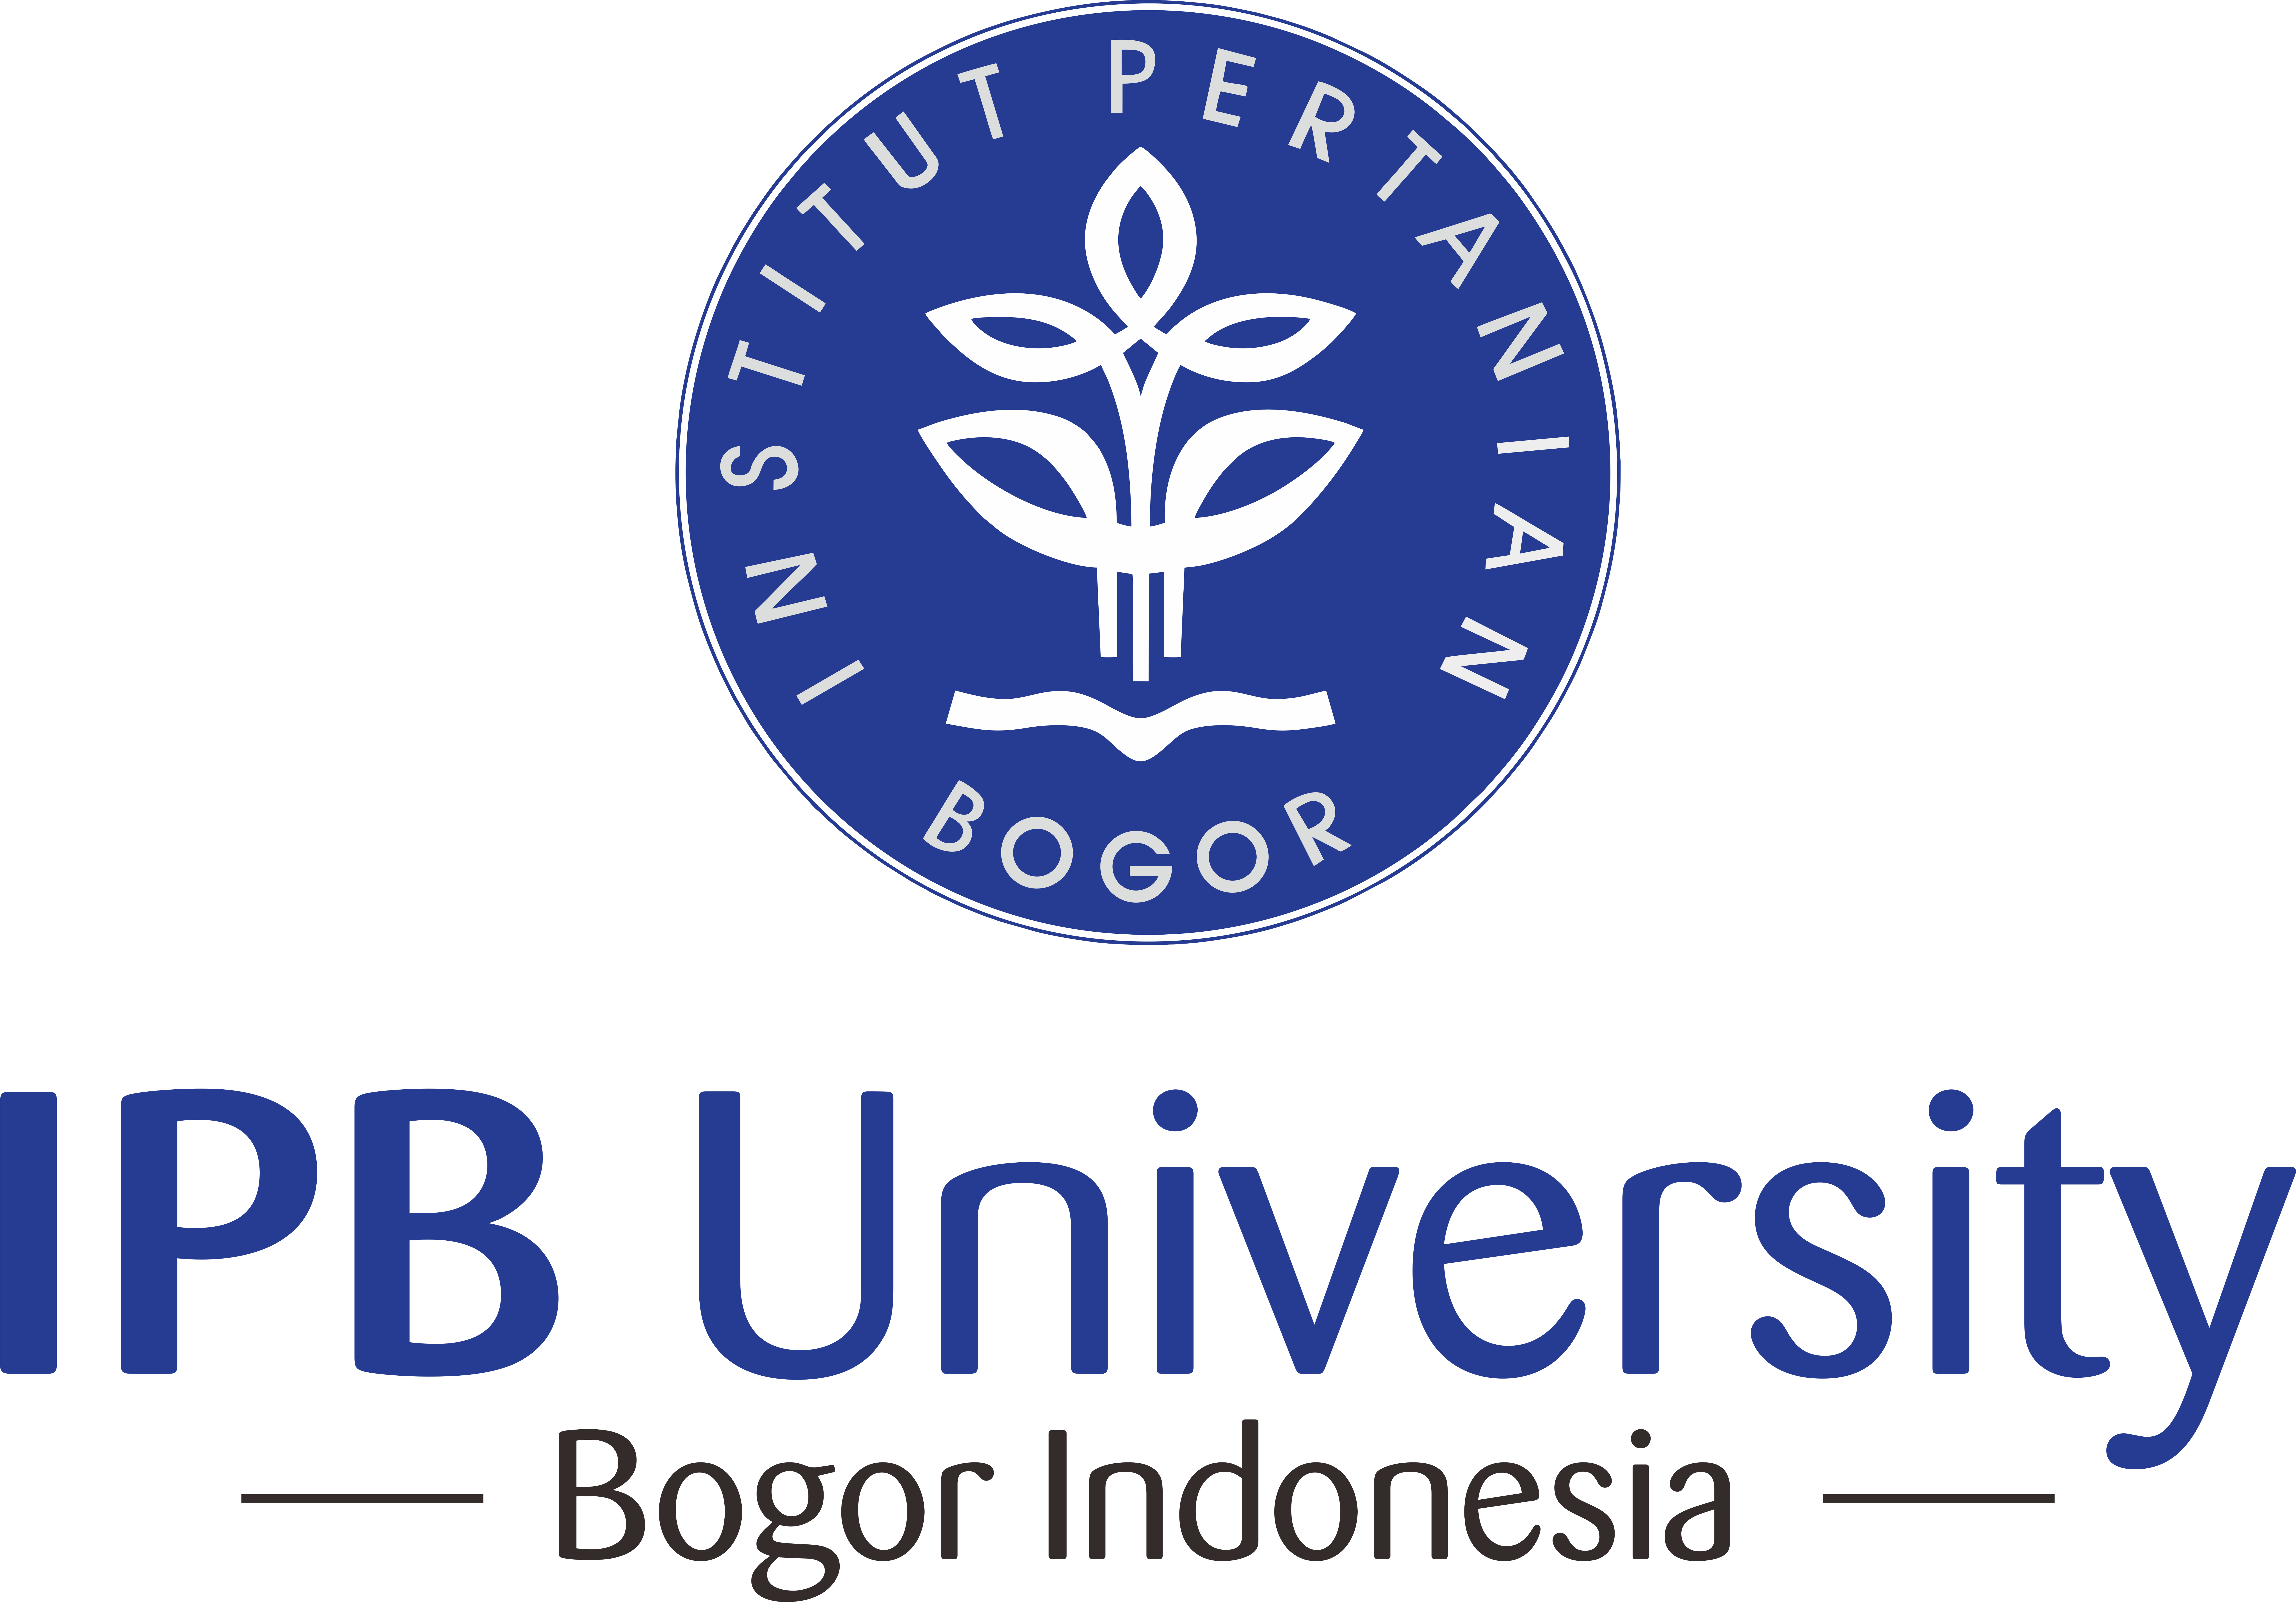 LOGO_Indonesia_Bogor Agricultural University